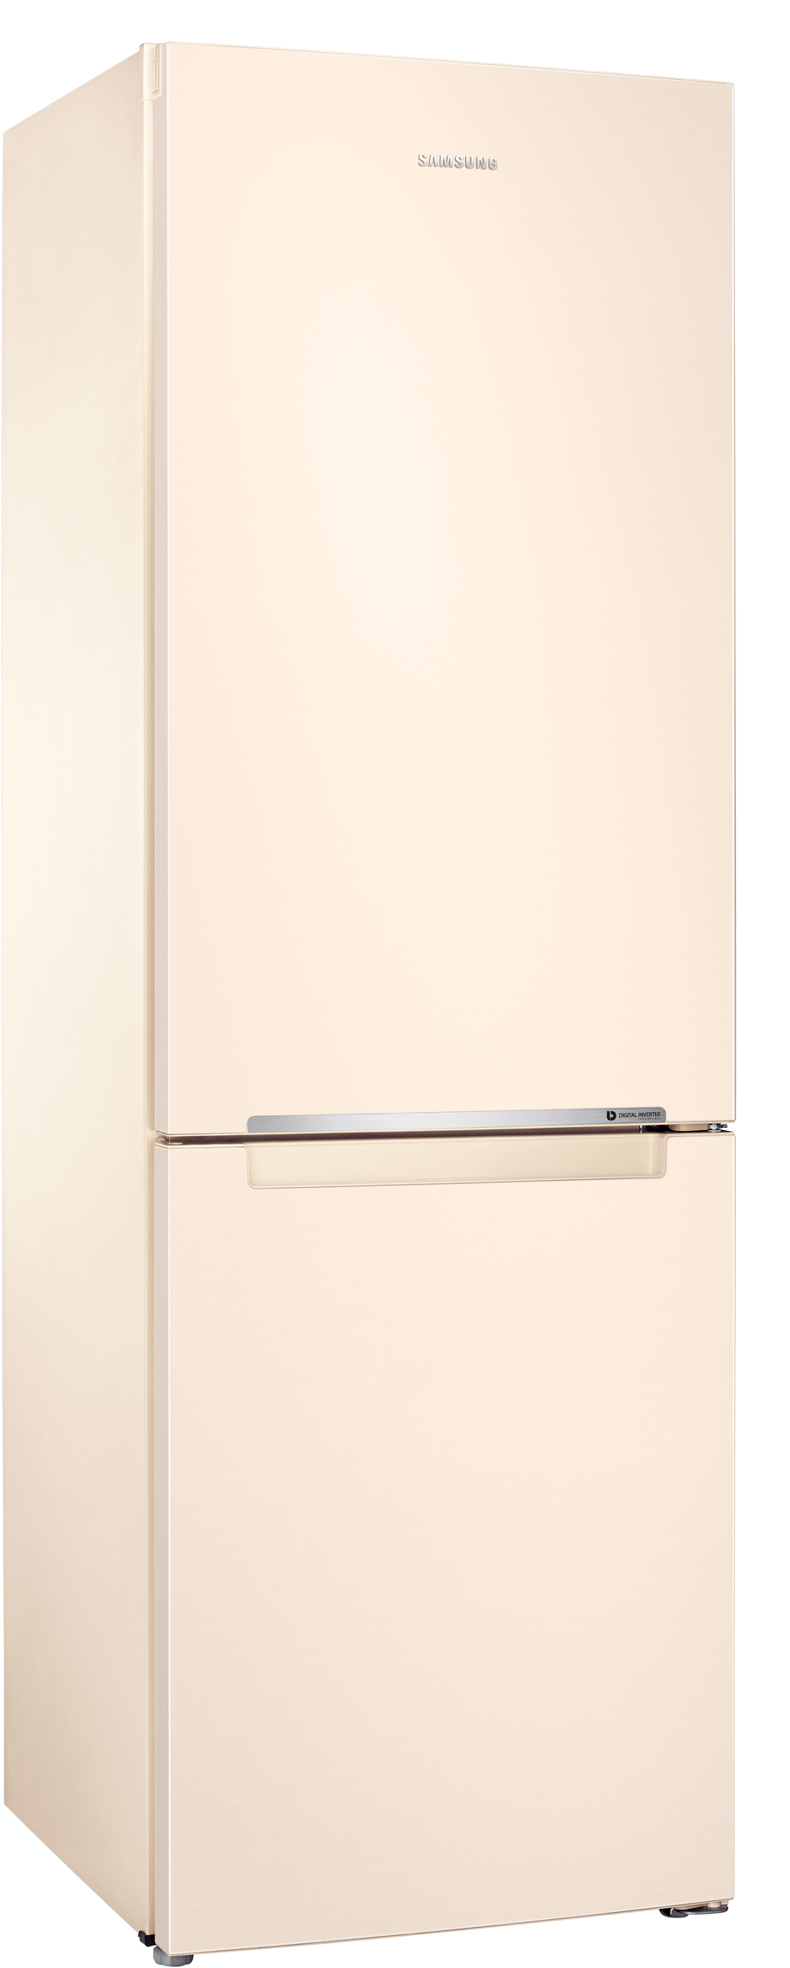 Холодильник Samsung RB33J3000EL/UA отзывы - изображения 5